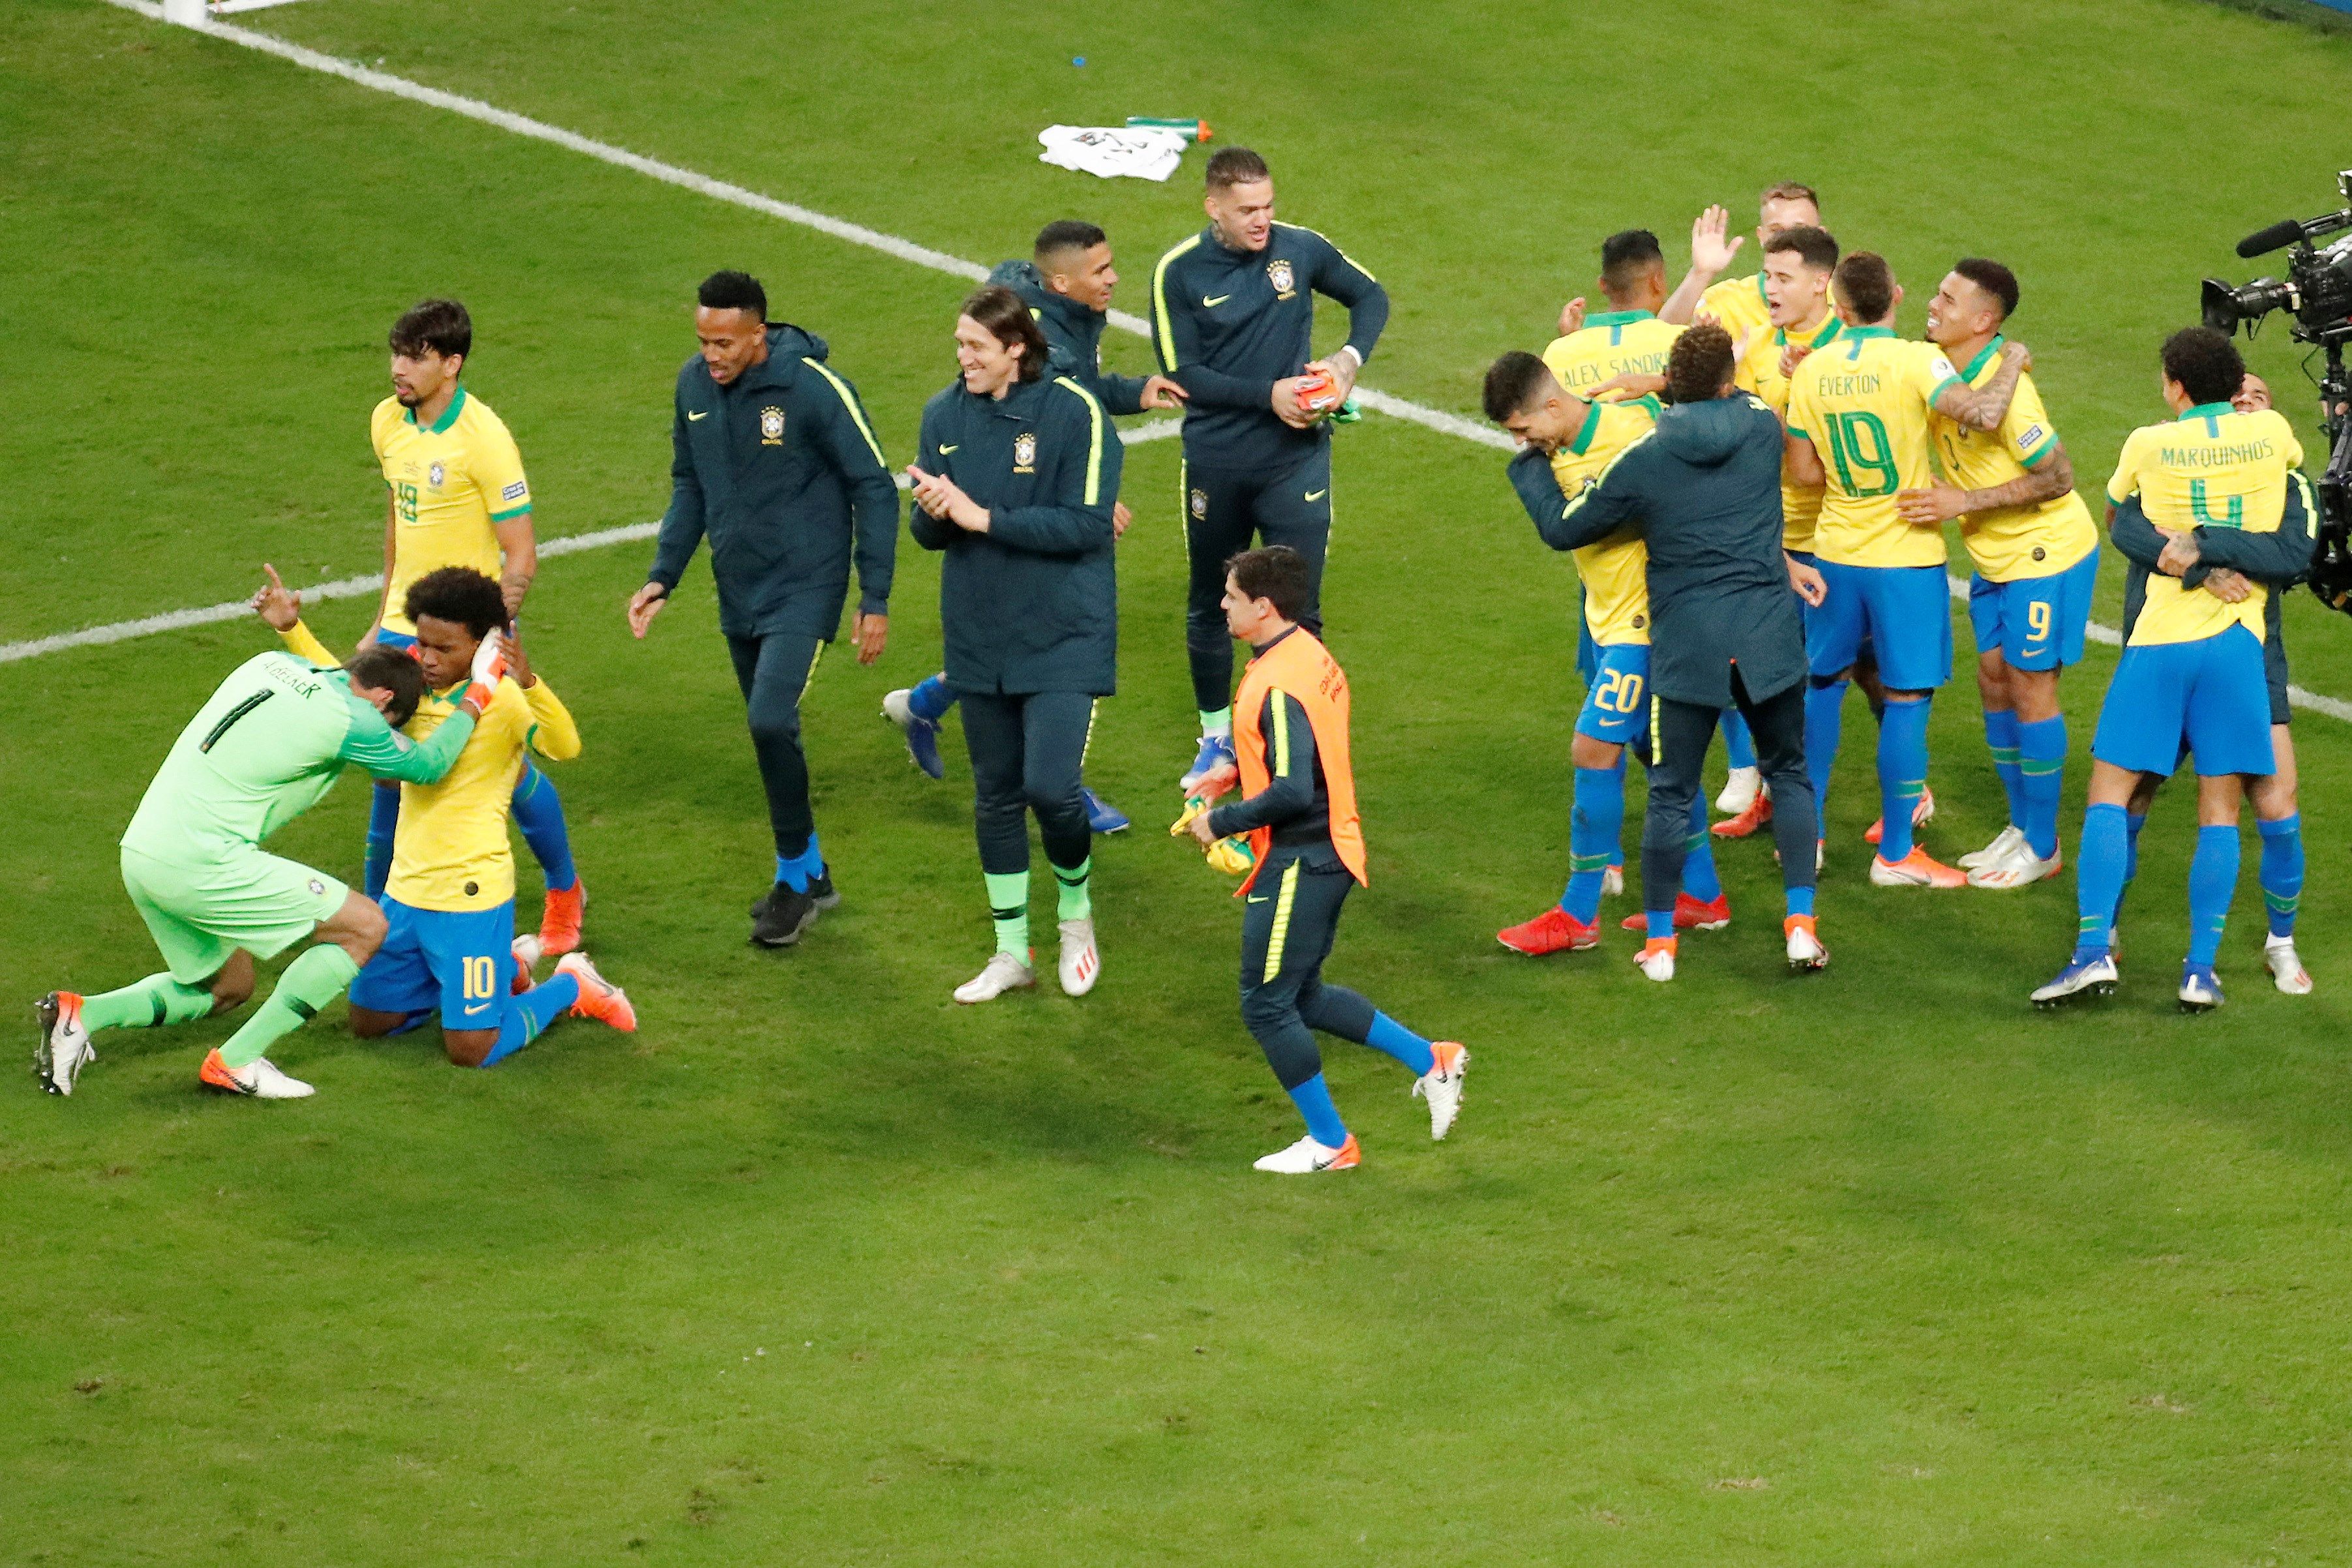 Jugadores de Brasil festejan al ganar en la serie de tiros penaltis, durante el partido contra Paraguay de cuartos de final de la Copa América en el Estadio Arena do Grêmio. (Foto Prensa Libre: EFE).